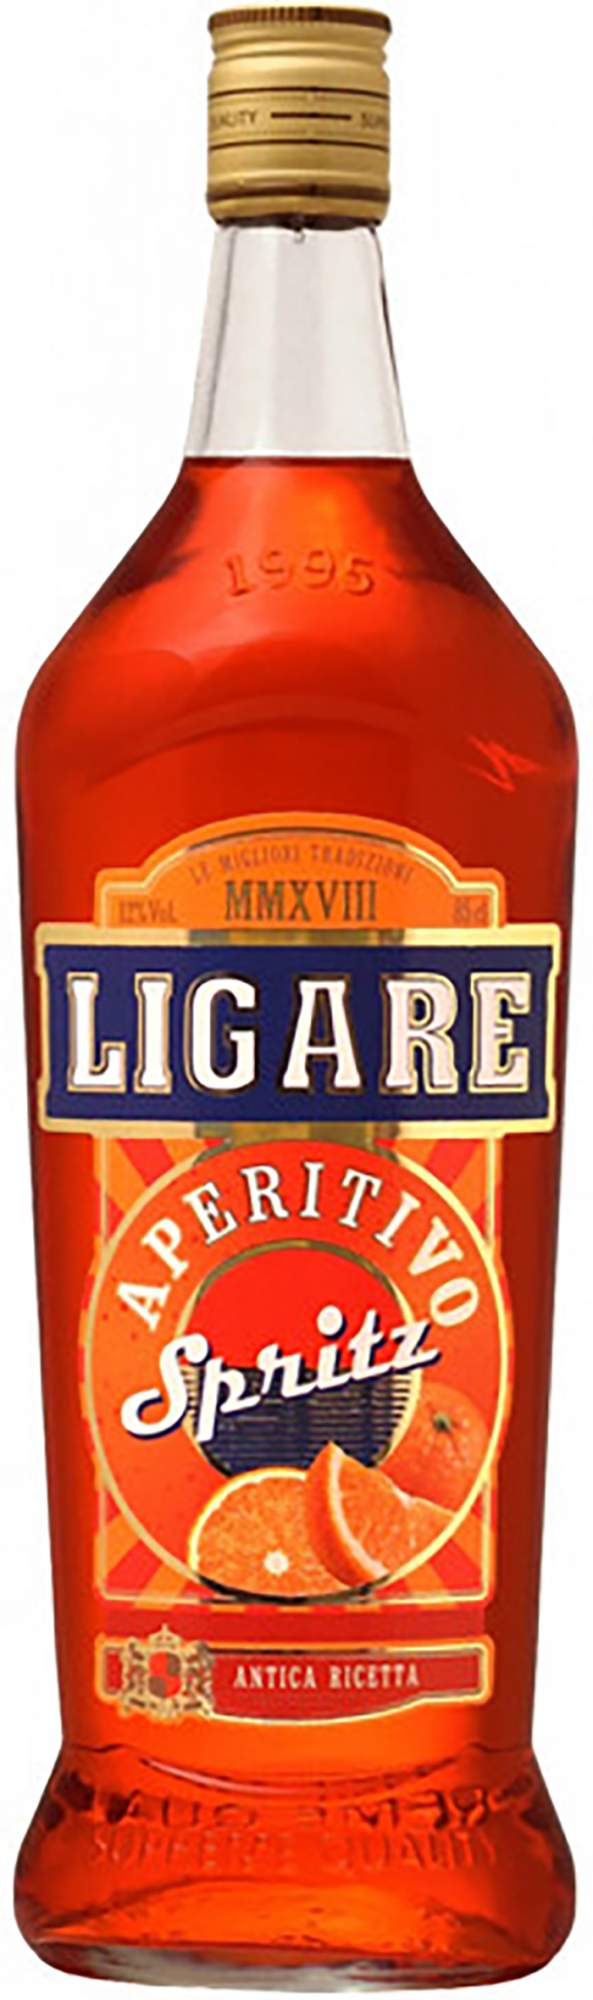 Ликер Ligare Aperitivo Spritz 17?0 мл - купить в Москве, цены на Мегамаркет | 100058658349